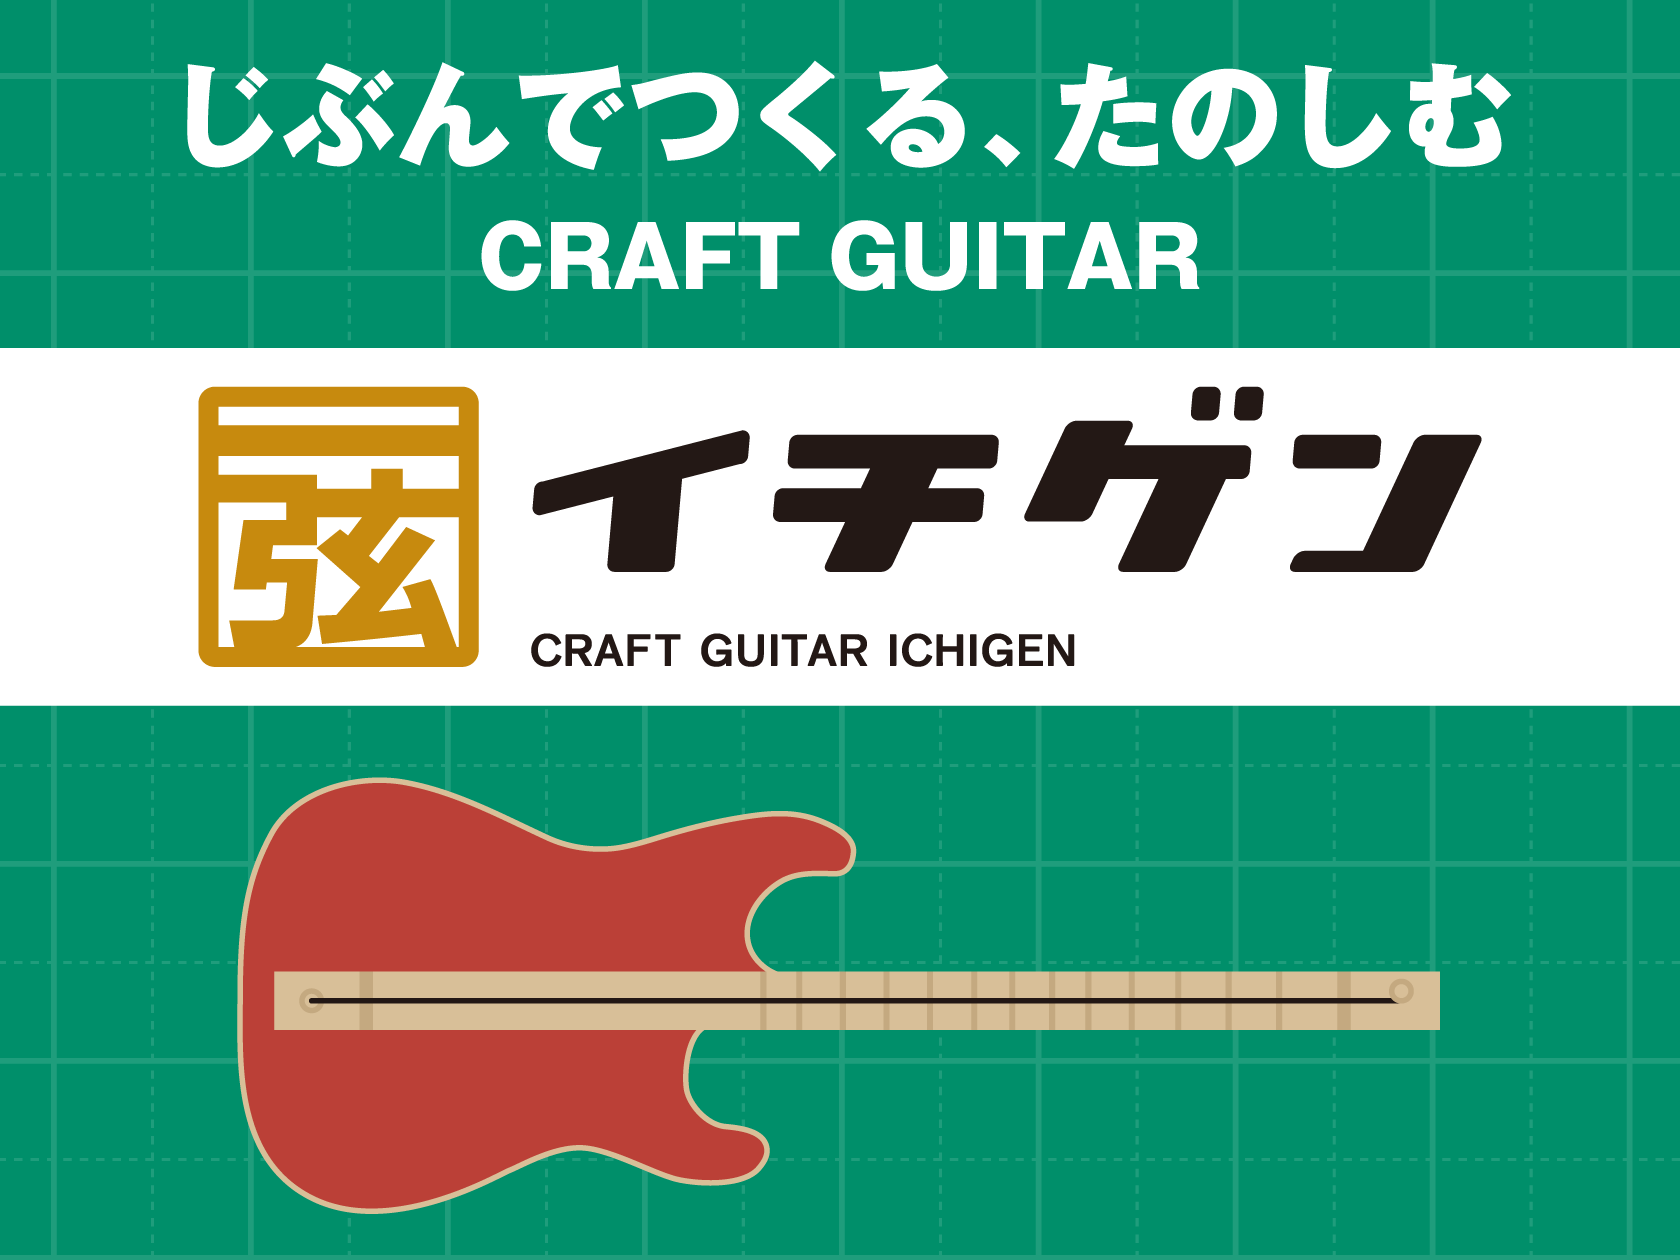 皆さま、こんにちは！22日から、島村楽器で販売されましたCRAFT GUITAR「イチゲン」のキットを使ったワークショップを開催致します！ イチゲンギターとは？ 楽器の弦は1本！！専用のキットを使って、楽しく簡単に作れる楽器です。ボディの色や形も、自分好みに作れるので、世界に一つだけのオリジナルギタ […]